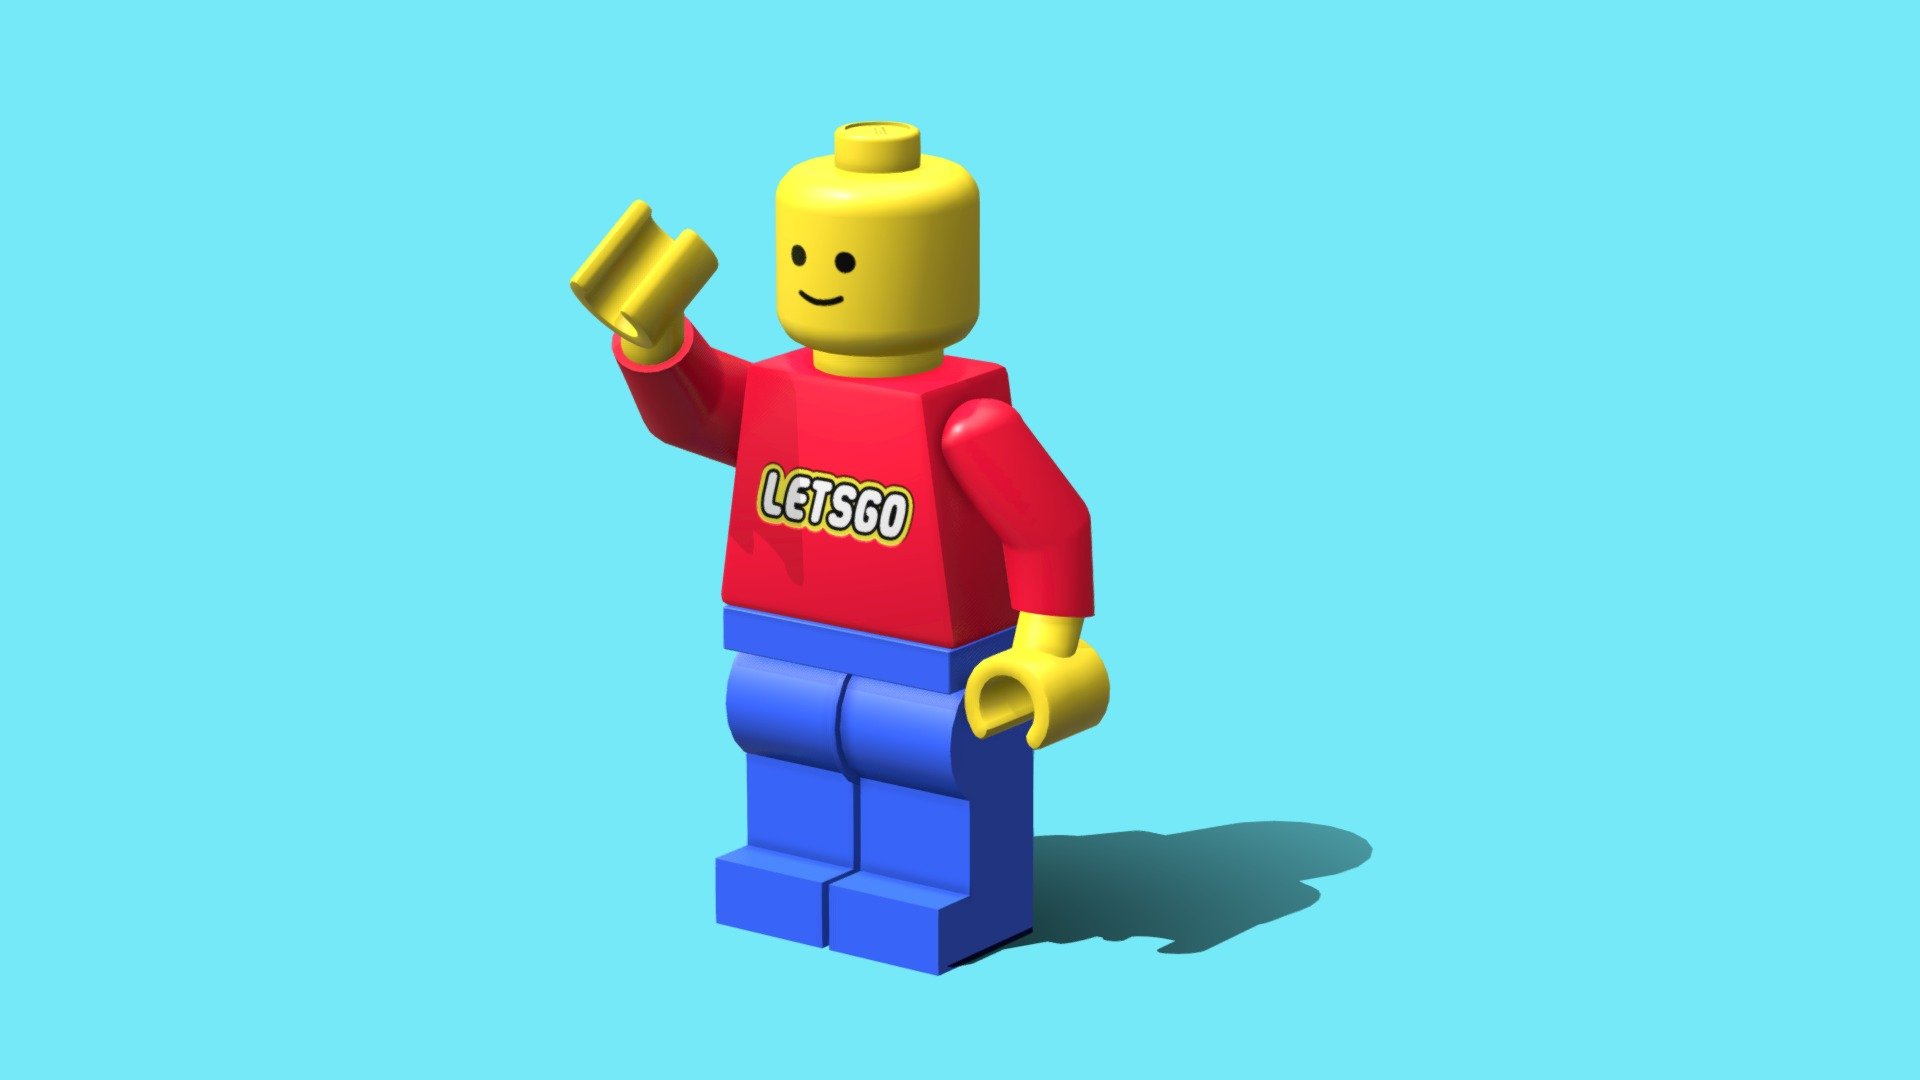 LEGO MAN - Download Free 3D model by McManus Media (@mcmanusmedia) [5ba6a57]